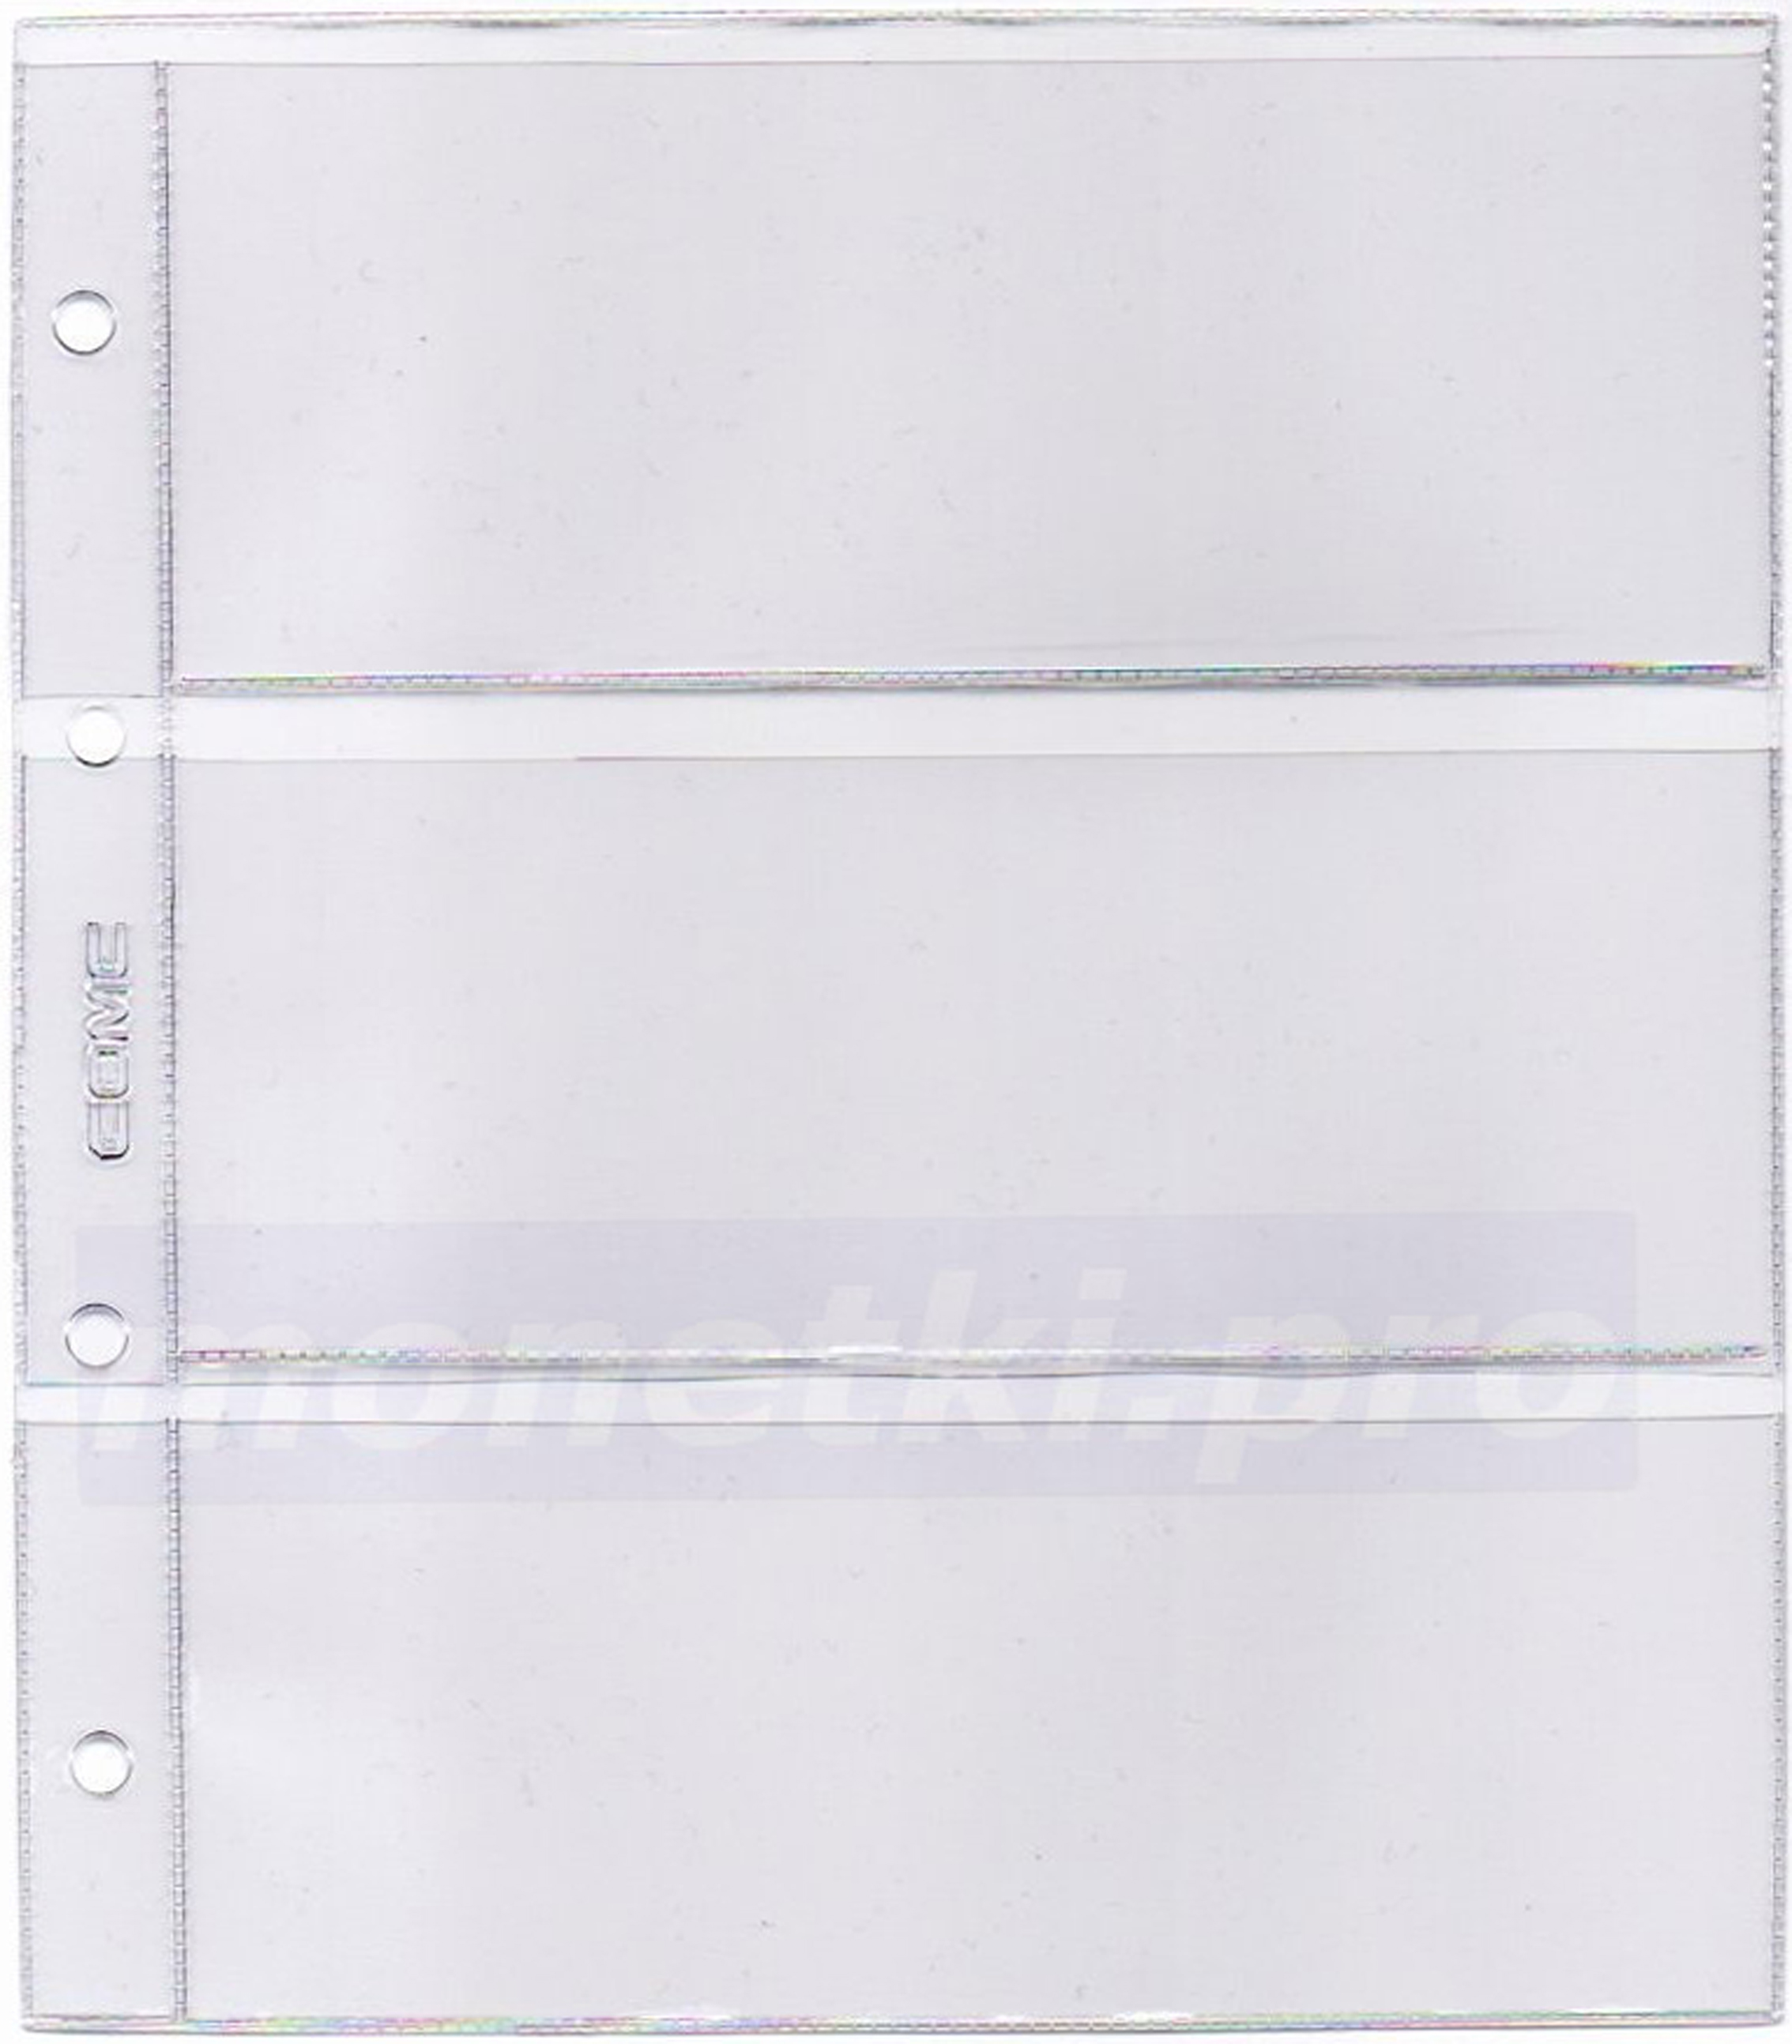 Купить листы для бон на 3 ячейки размер кармана 175 х 70 мм формат Нумис (Numis), фото 